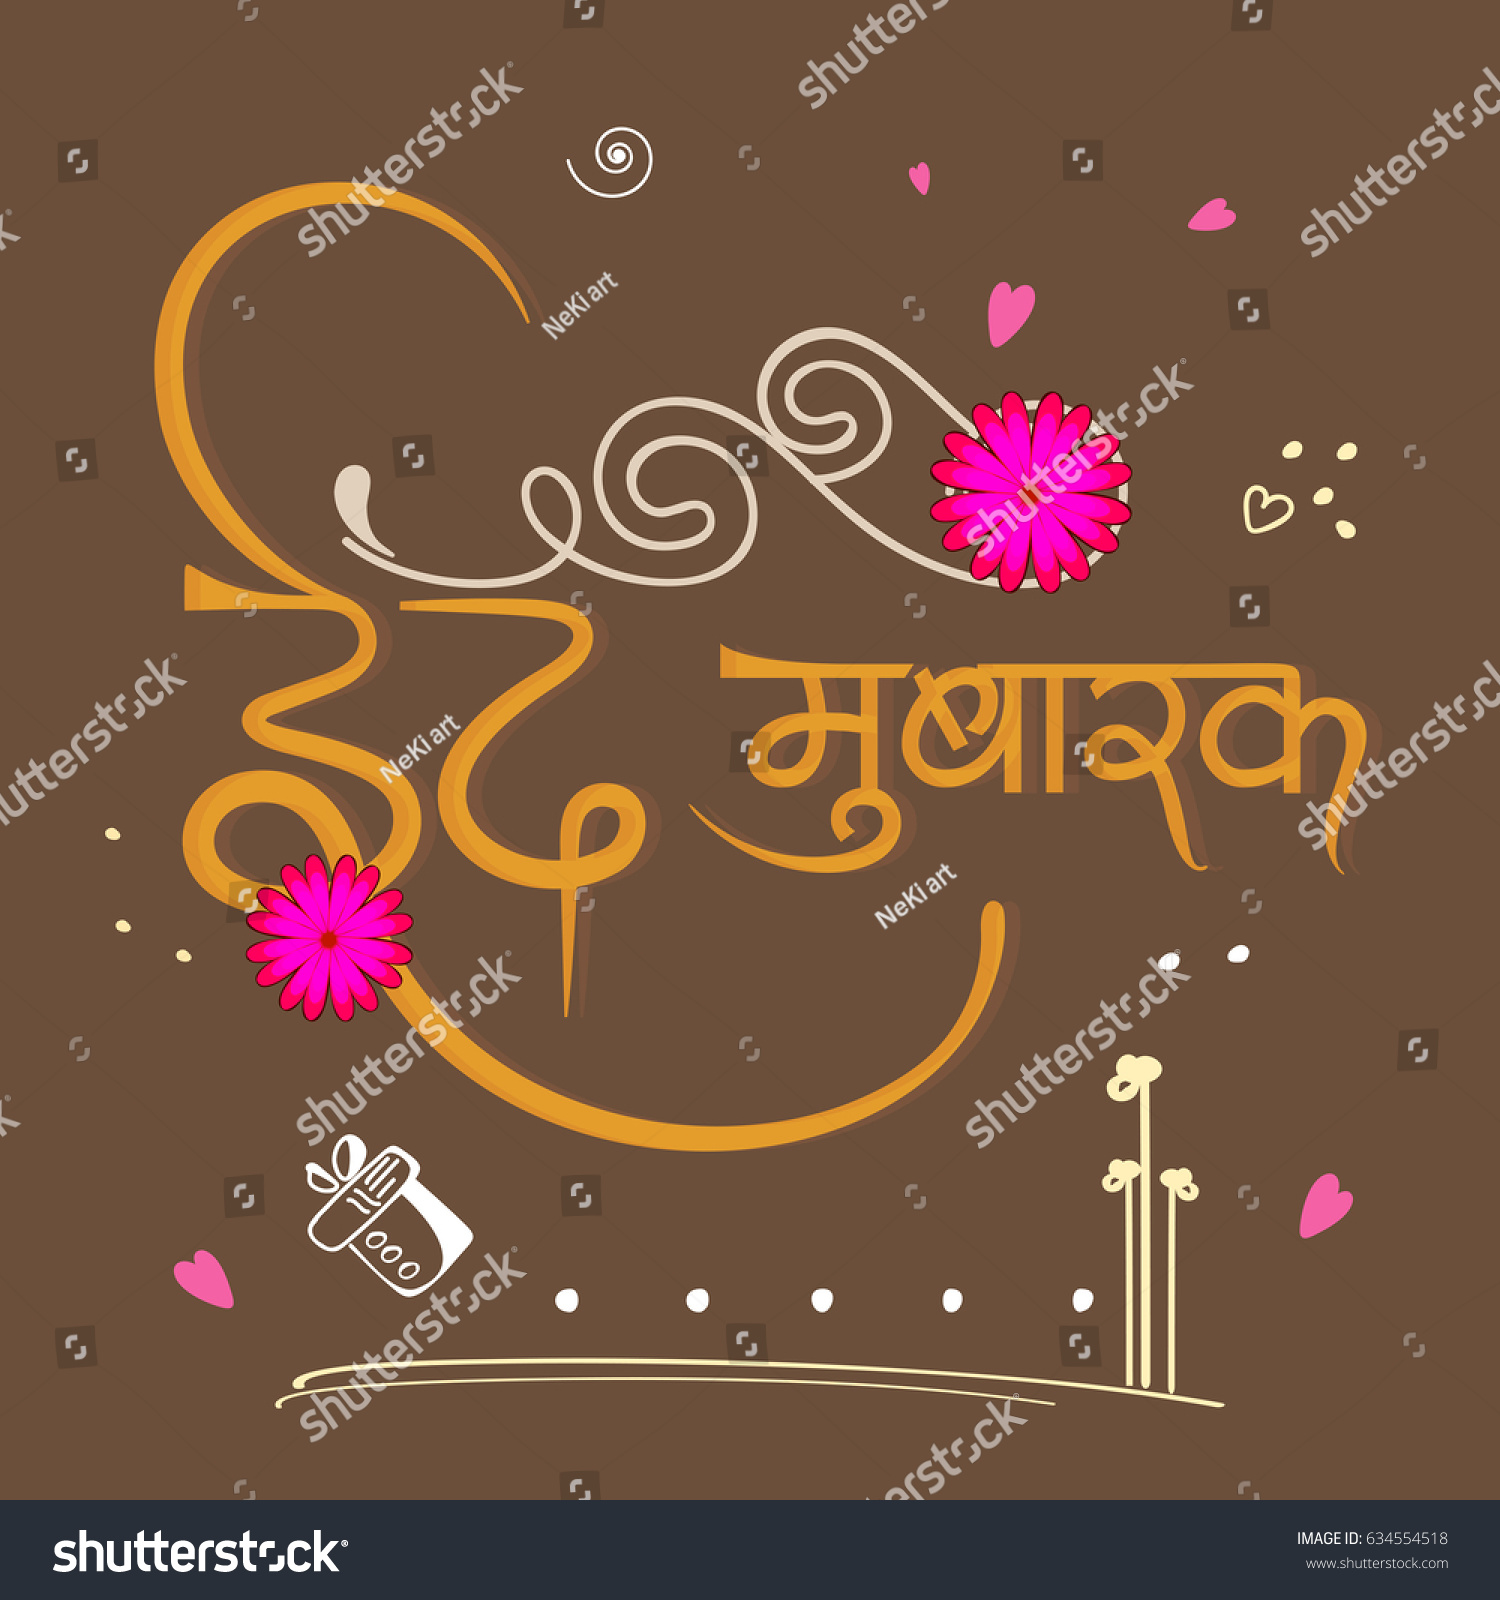 Hindi Text Eid Mubarak Beautiful Doodle Stock Vector Royalty Free